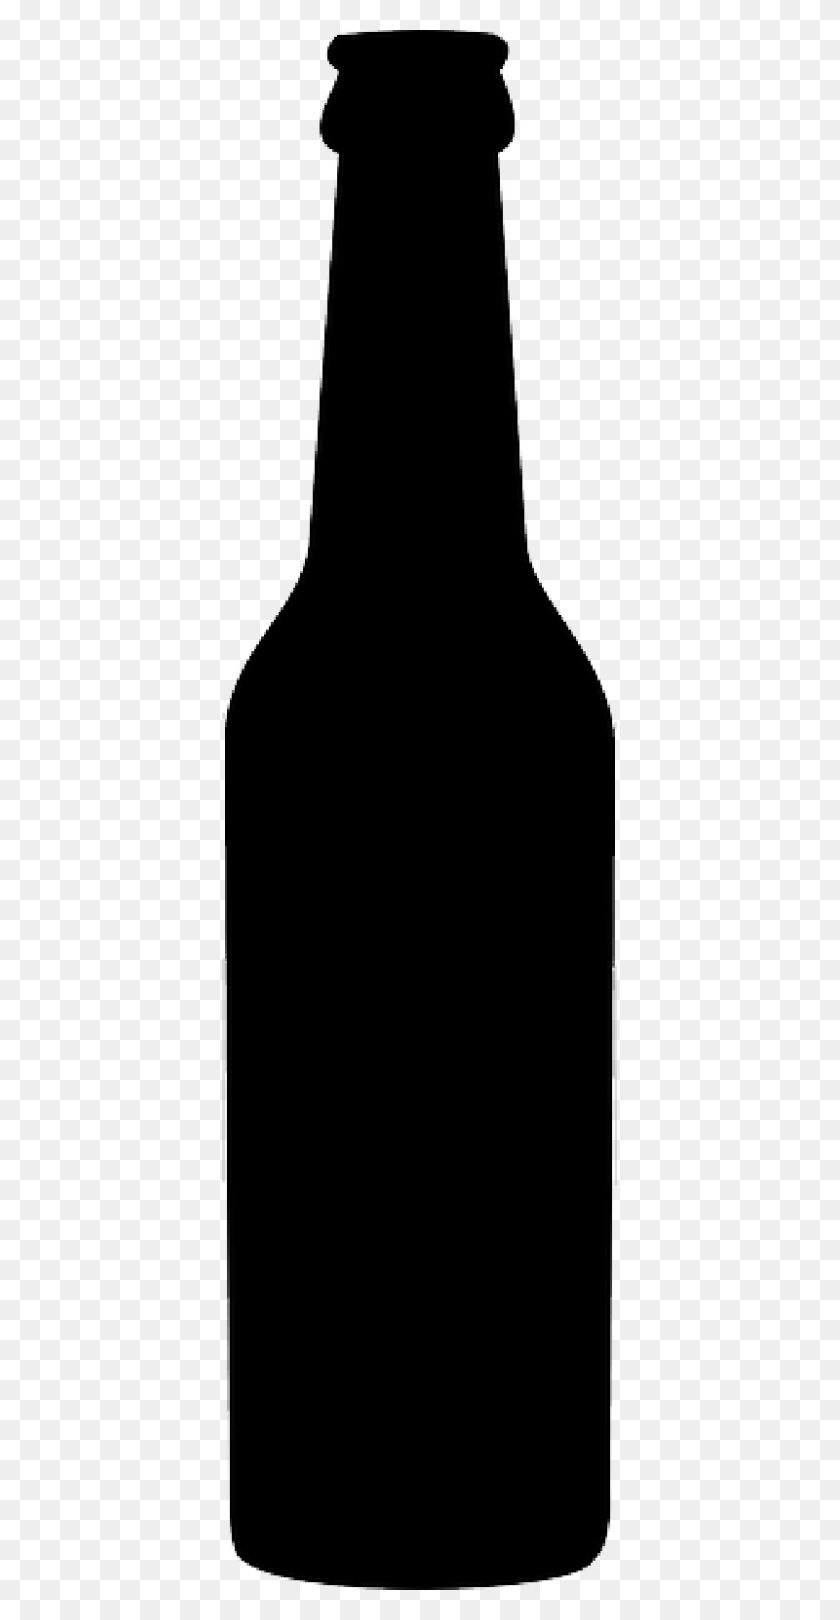 800x1600 Бутылки С Водой Клипарты Скачать Бесплатно Картинки Бесплатно Картинки - Бутылка С Водой Клипарт Png